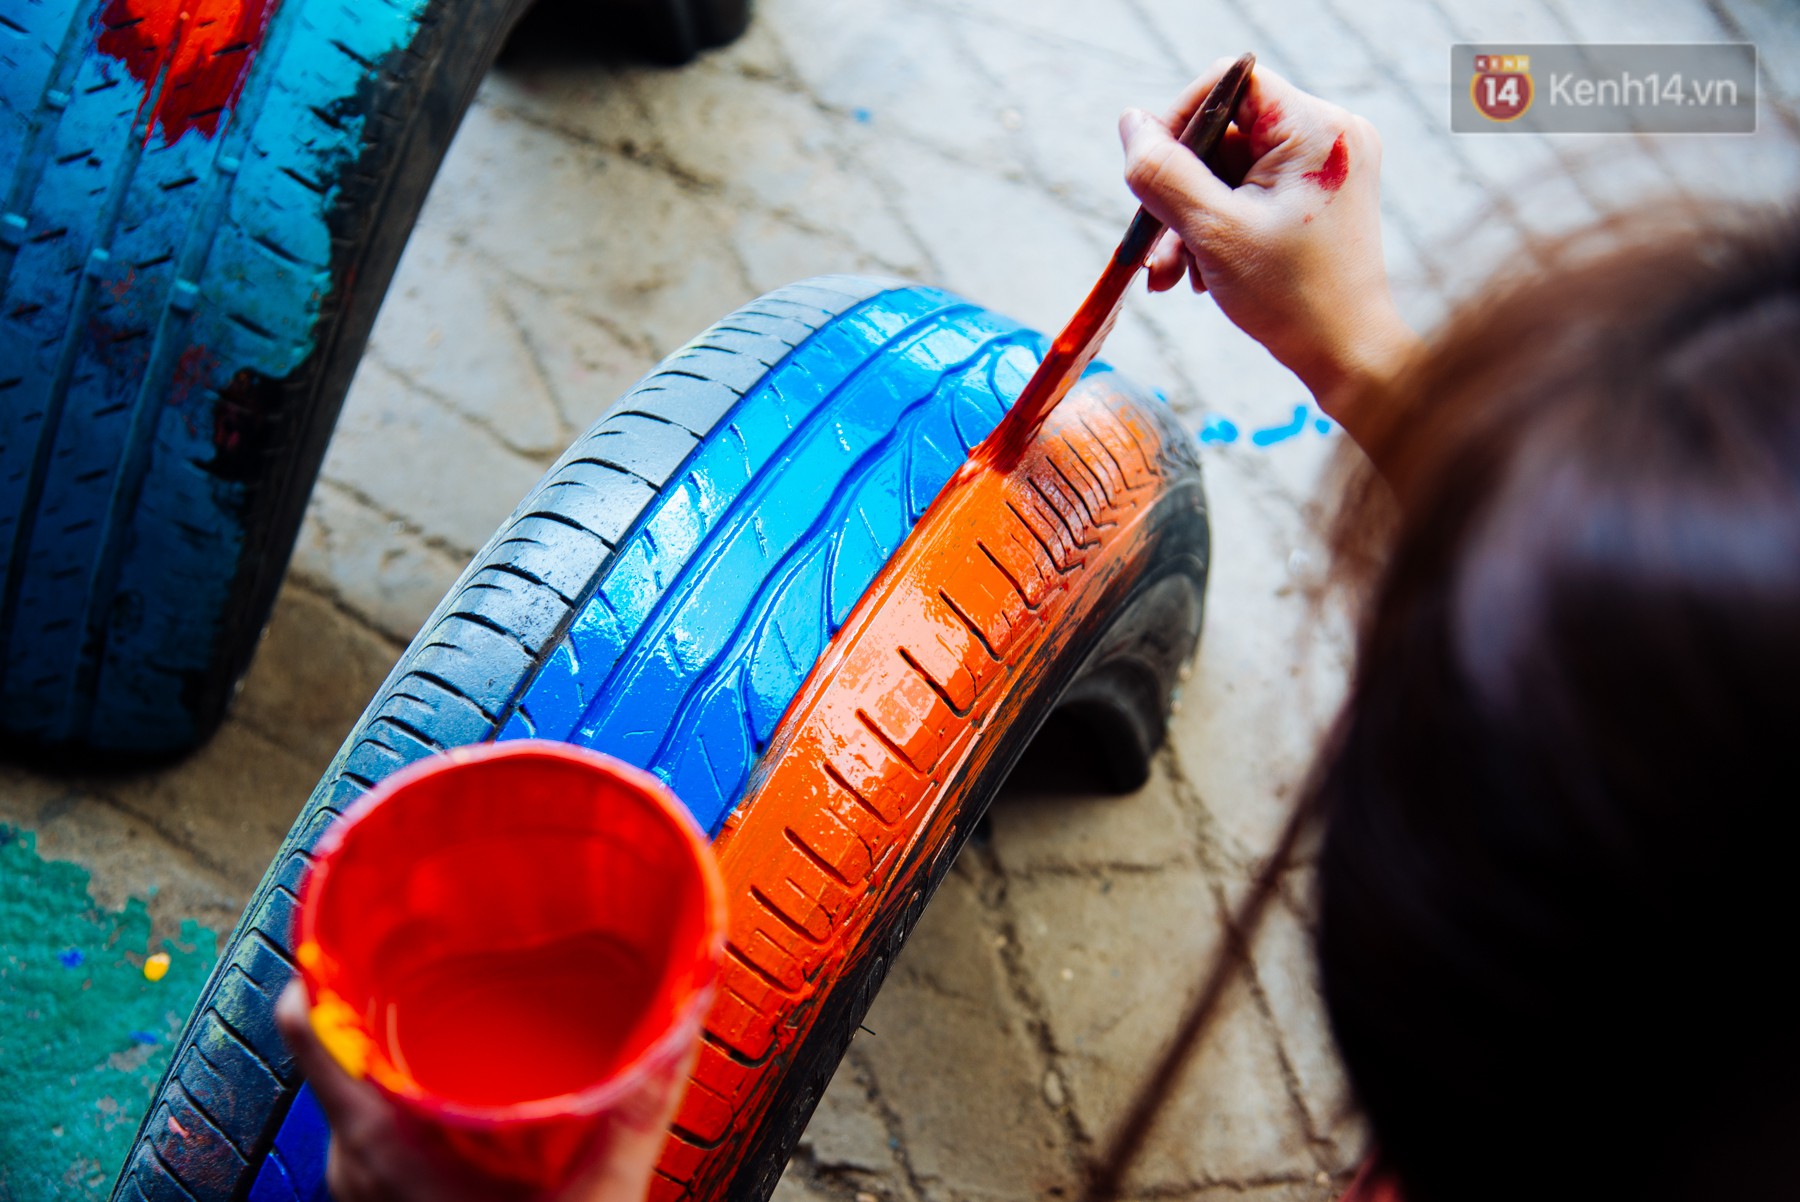 Nhận về những vỏ lốp ô tô hư hỏng và đây là cách mà nhóm bạn trẻ tạo nên một sân chơi cho các em nhỏ ở Bình Phước - Ảnh 7.